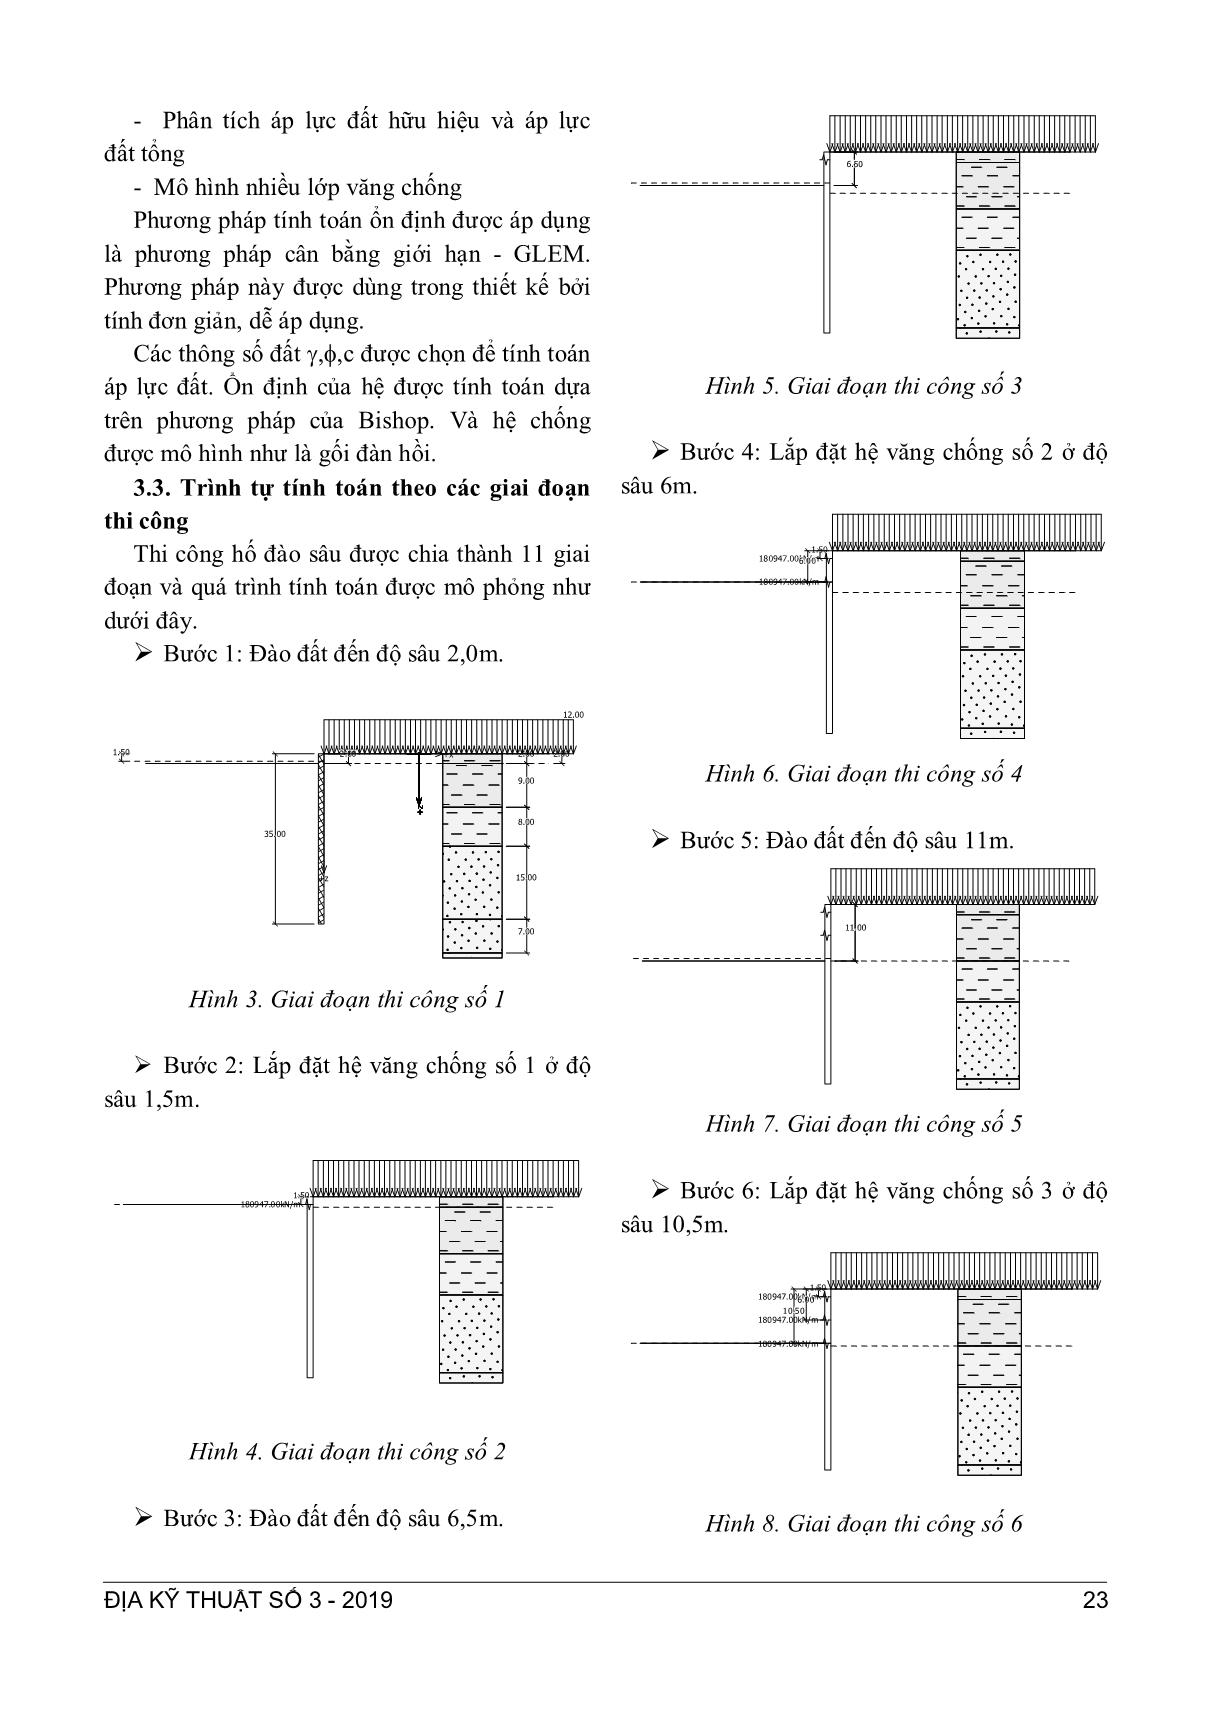 Phân tích, so sánh bài toán thiết kế hố đào sâu cho ga ngầm của đường sắt Hà Nội qua một số tiêu chuẩn trang 4